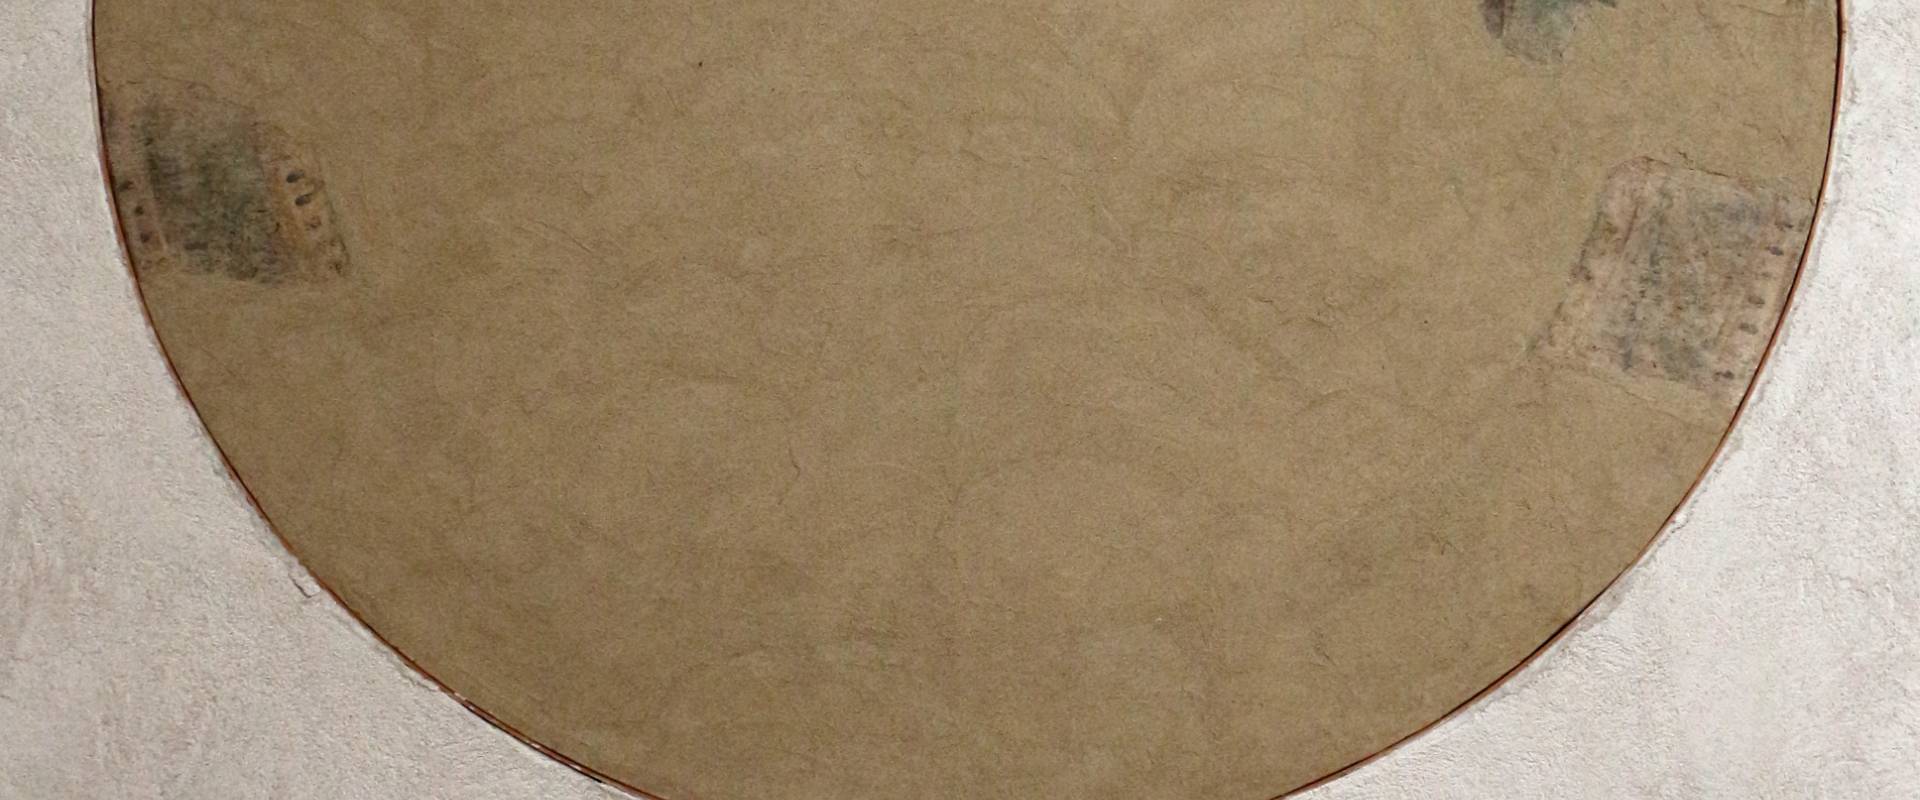 Michele coltellini, garofalo e nicolò pisano, storie della vergine e ritratti di committenti, 1499, dall'oratorio di s.m. della concezione o della scala a ferrara 12 foto di Sailko